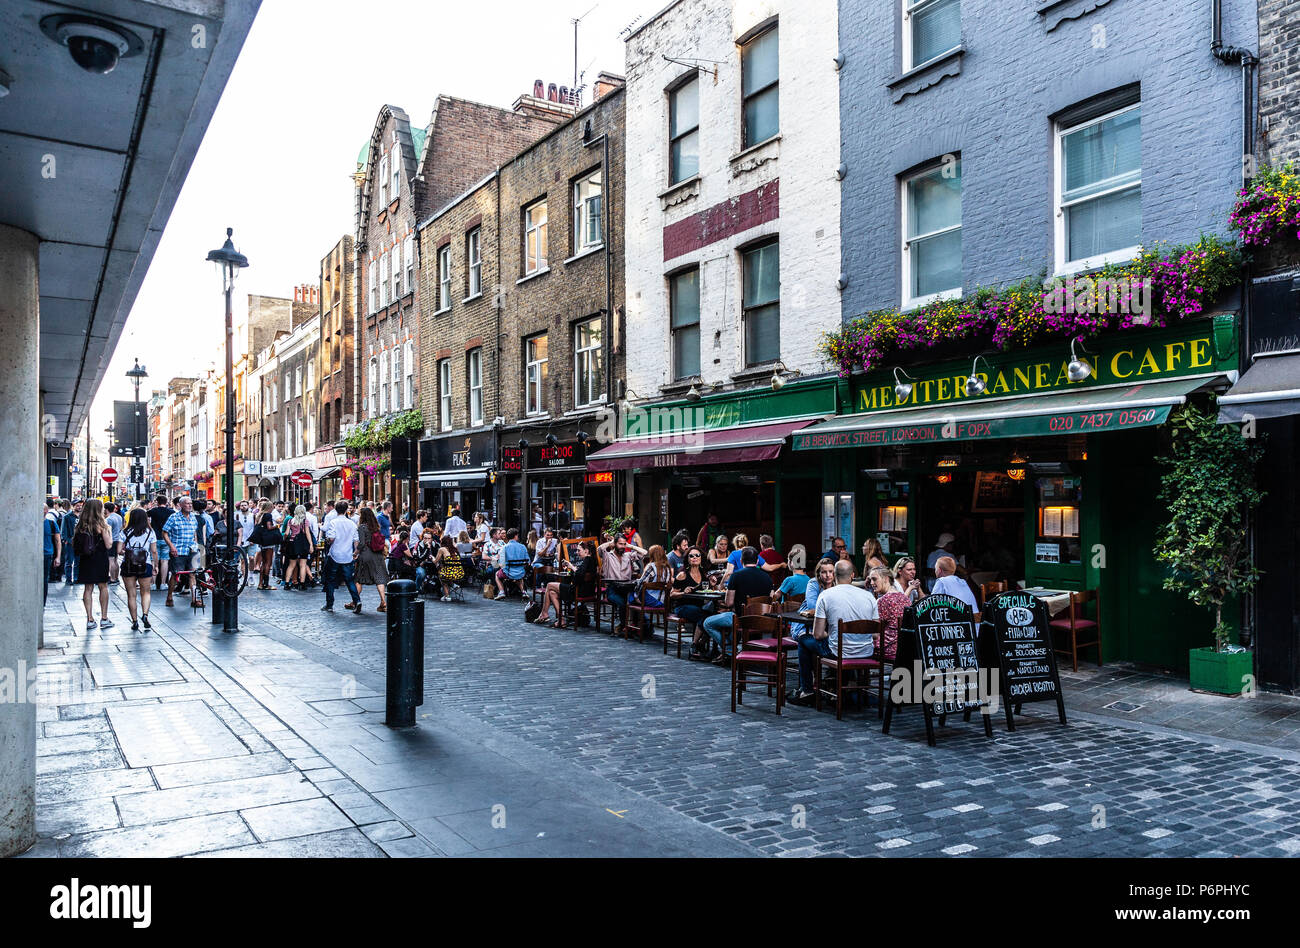 Les clients dînant en plein air dans une rangée de restaurants sur Berwick Street, Soho, Londres, Angleterre, Royaume-Uni. Banque D'Images